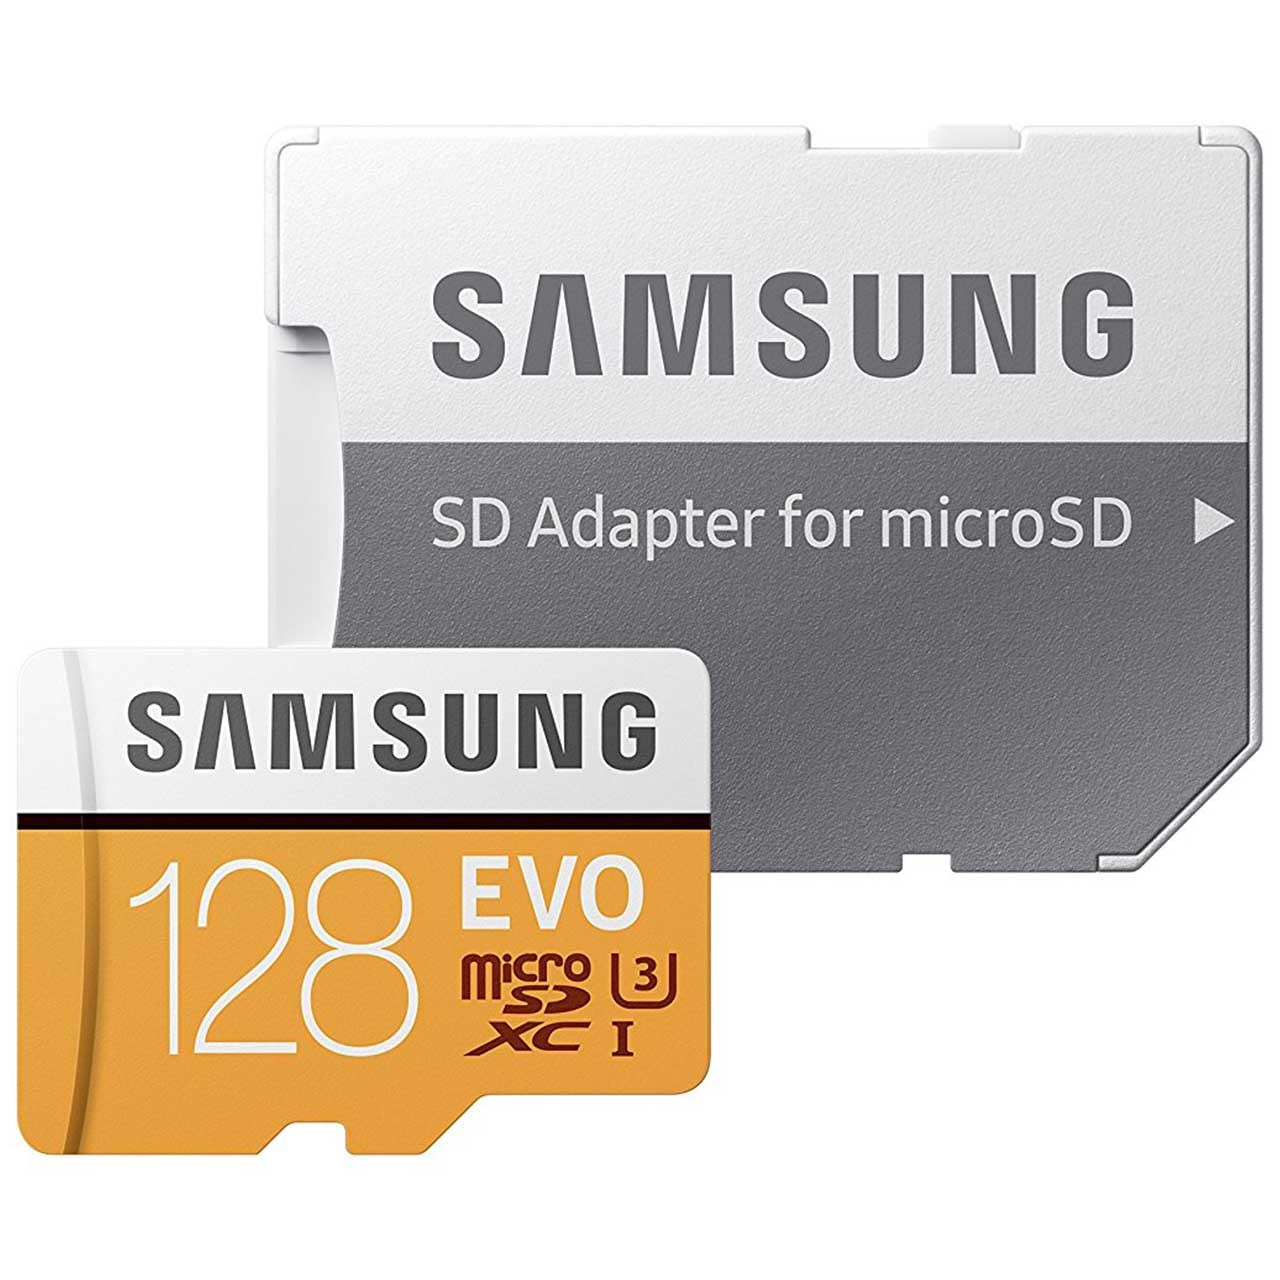 کارت حافظه microSDXC سامسونگ مدل Evo کلاس 10 استاندارد UHS-I U3 سرعت 100MBps همراه با آداپتور SD ظرفیت 128 گیگابایت